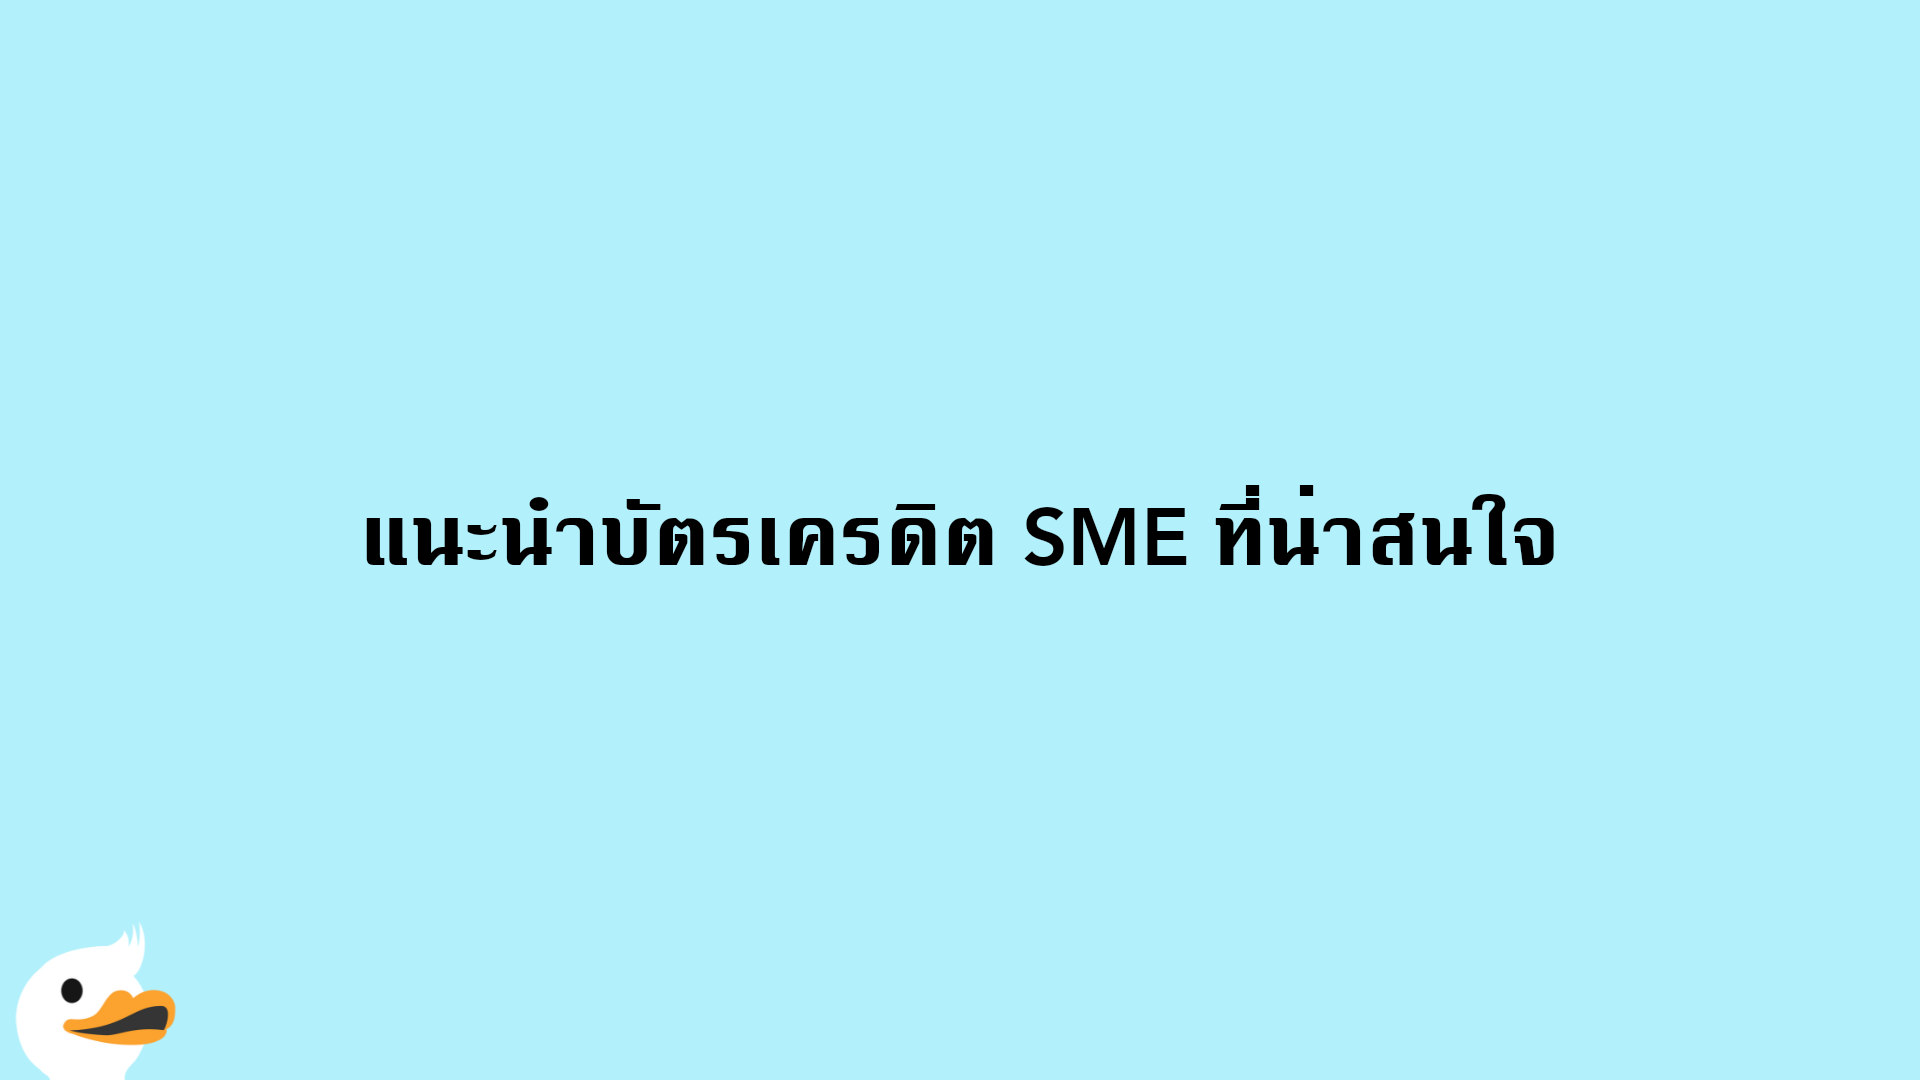 แนะนำบัตรเครดิต SME ที่น่าสนใจ